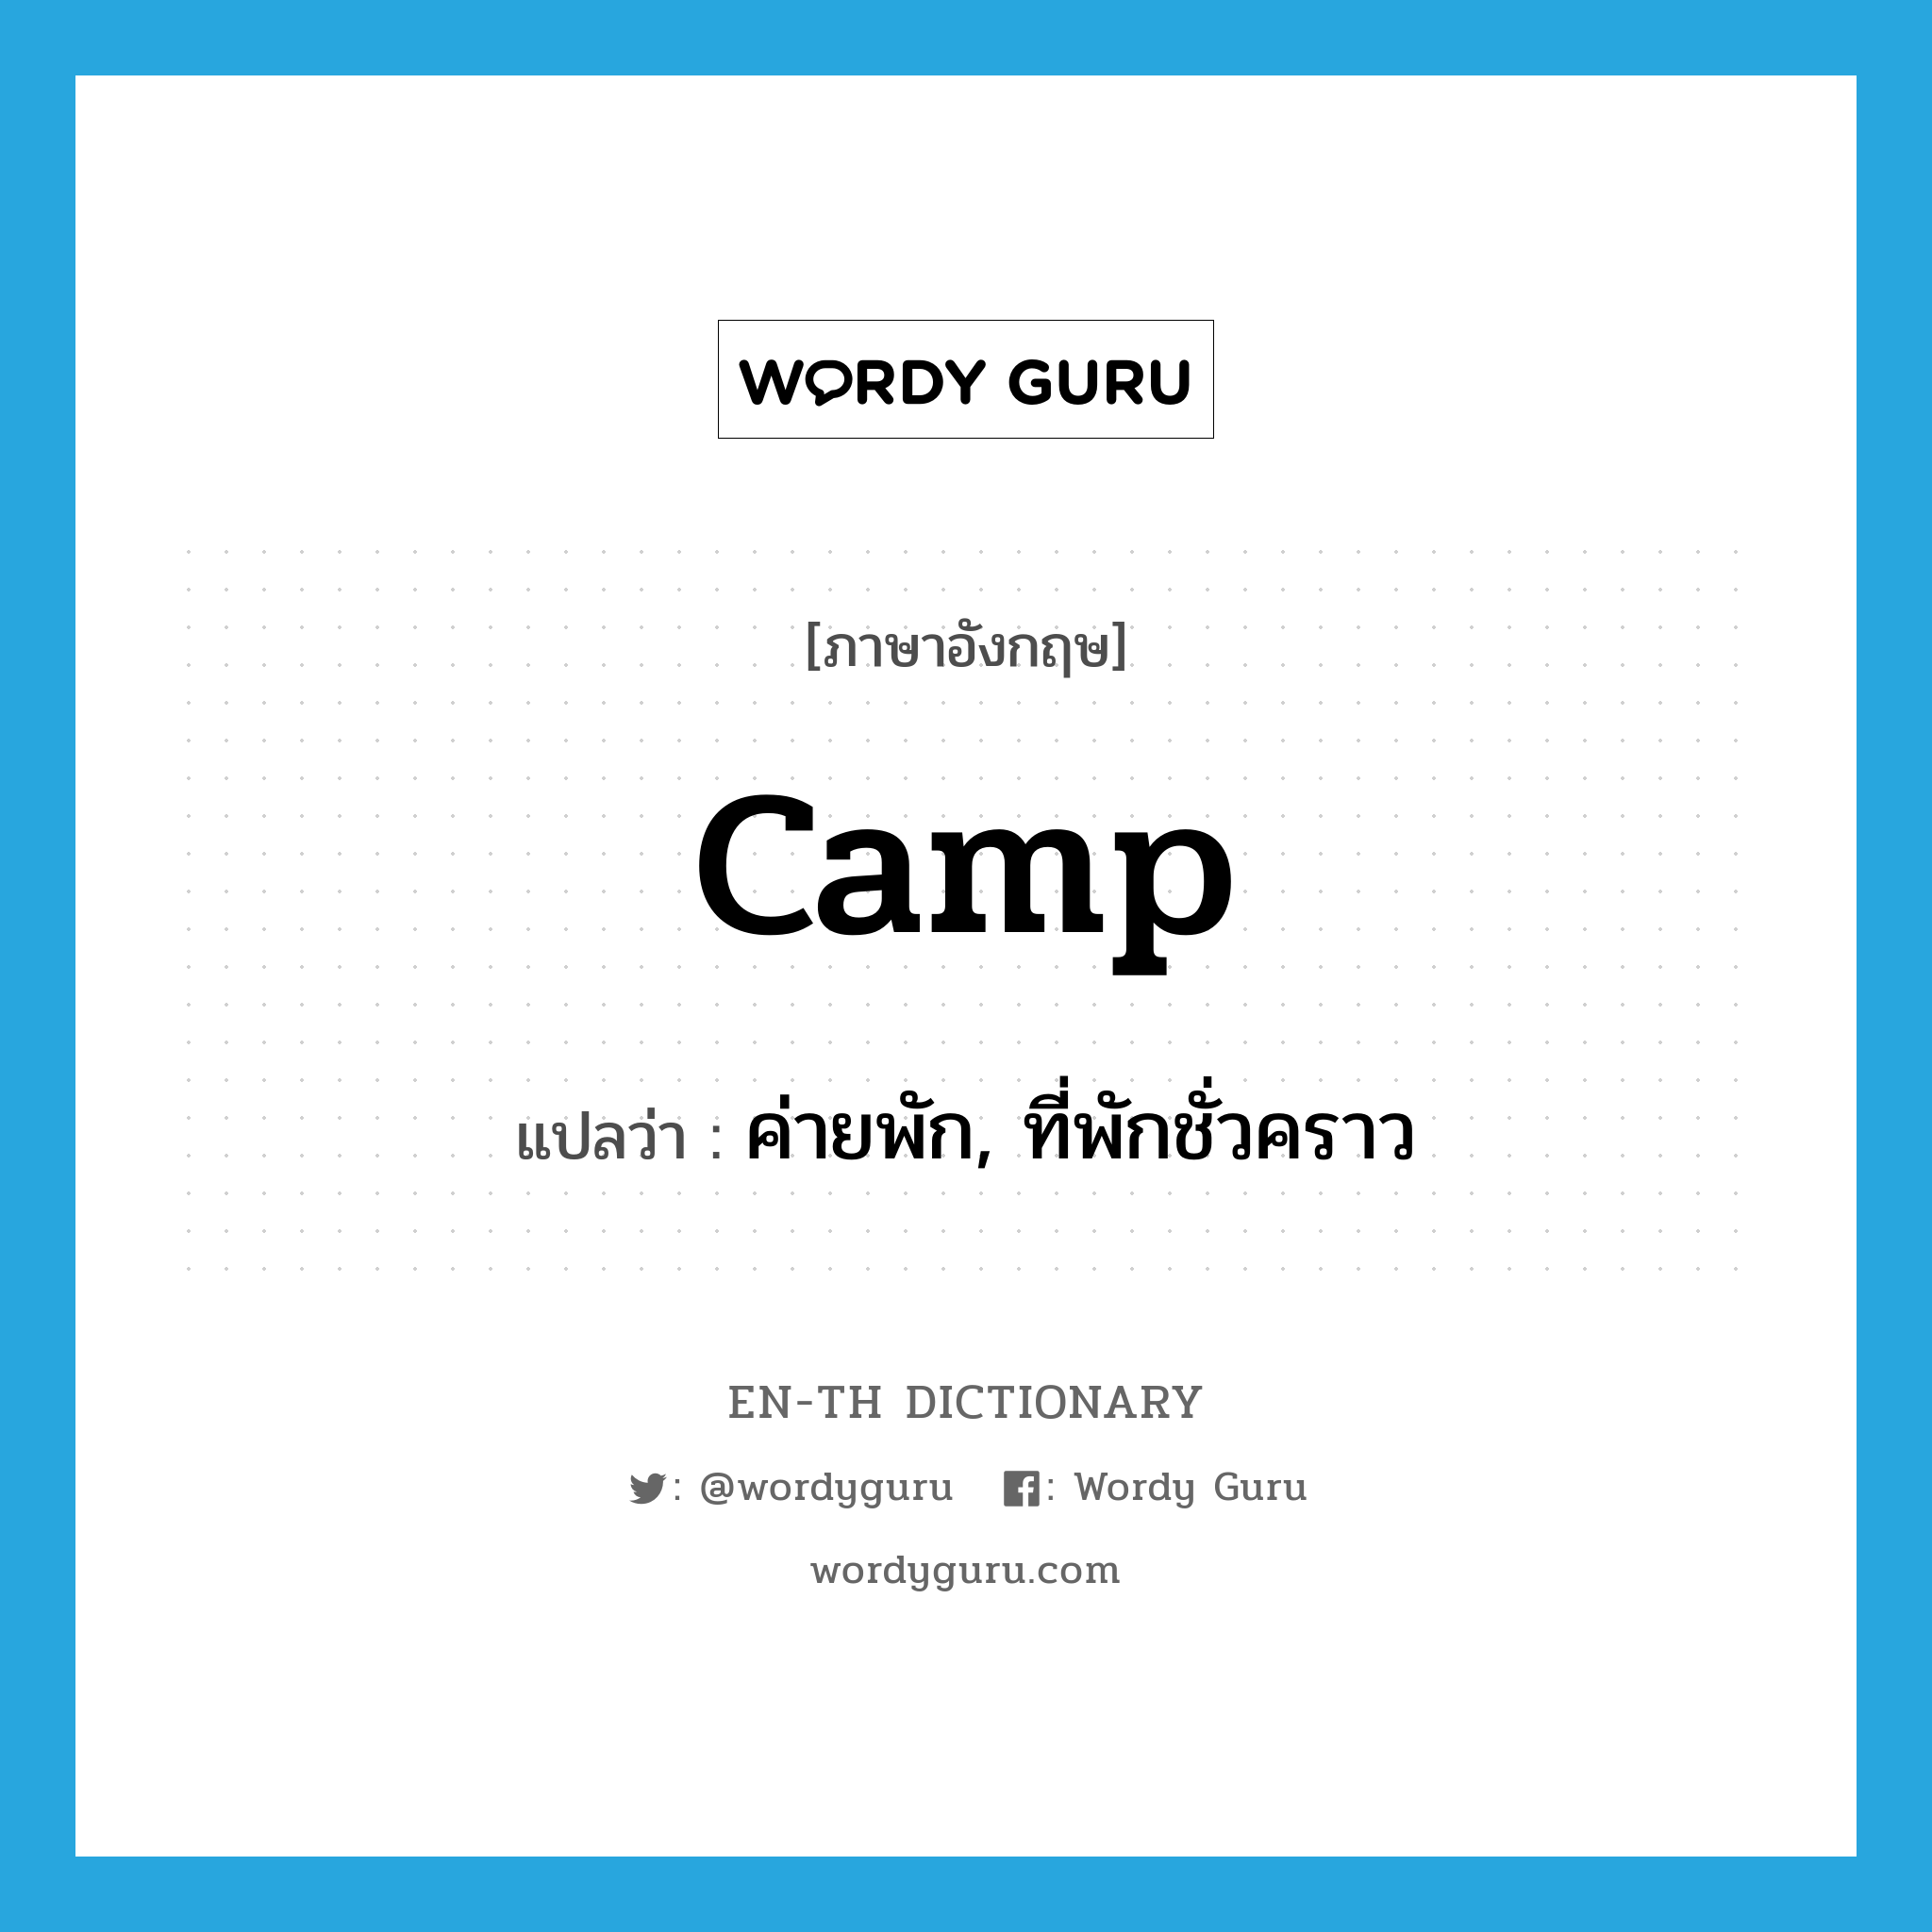 ค่ายพัก, ที่พักชั่วคราว ภาษาอังกฤษ?, คำศัพท์ภาษาอังกฤษ ค่ายพัก, ที่พักชั่วคราว แปลว่า camp ประเภท N หมวด N